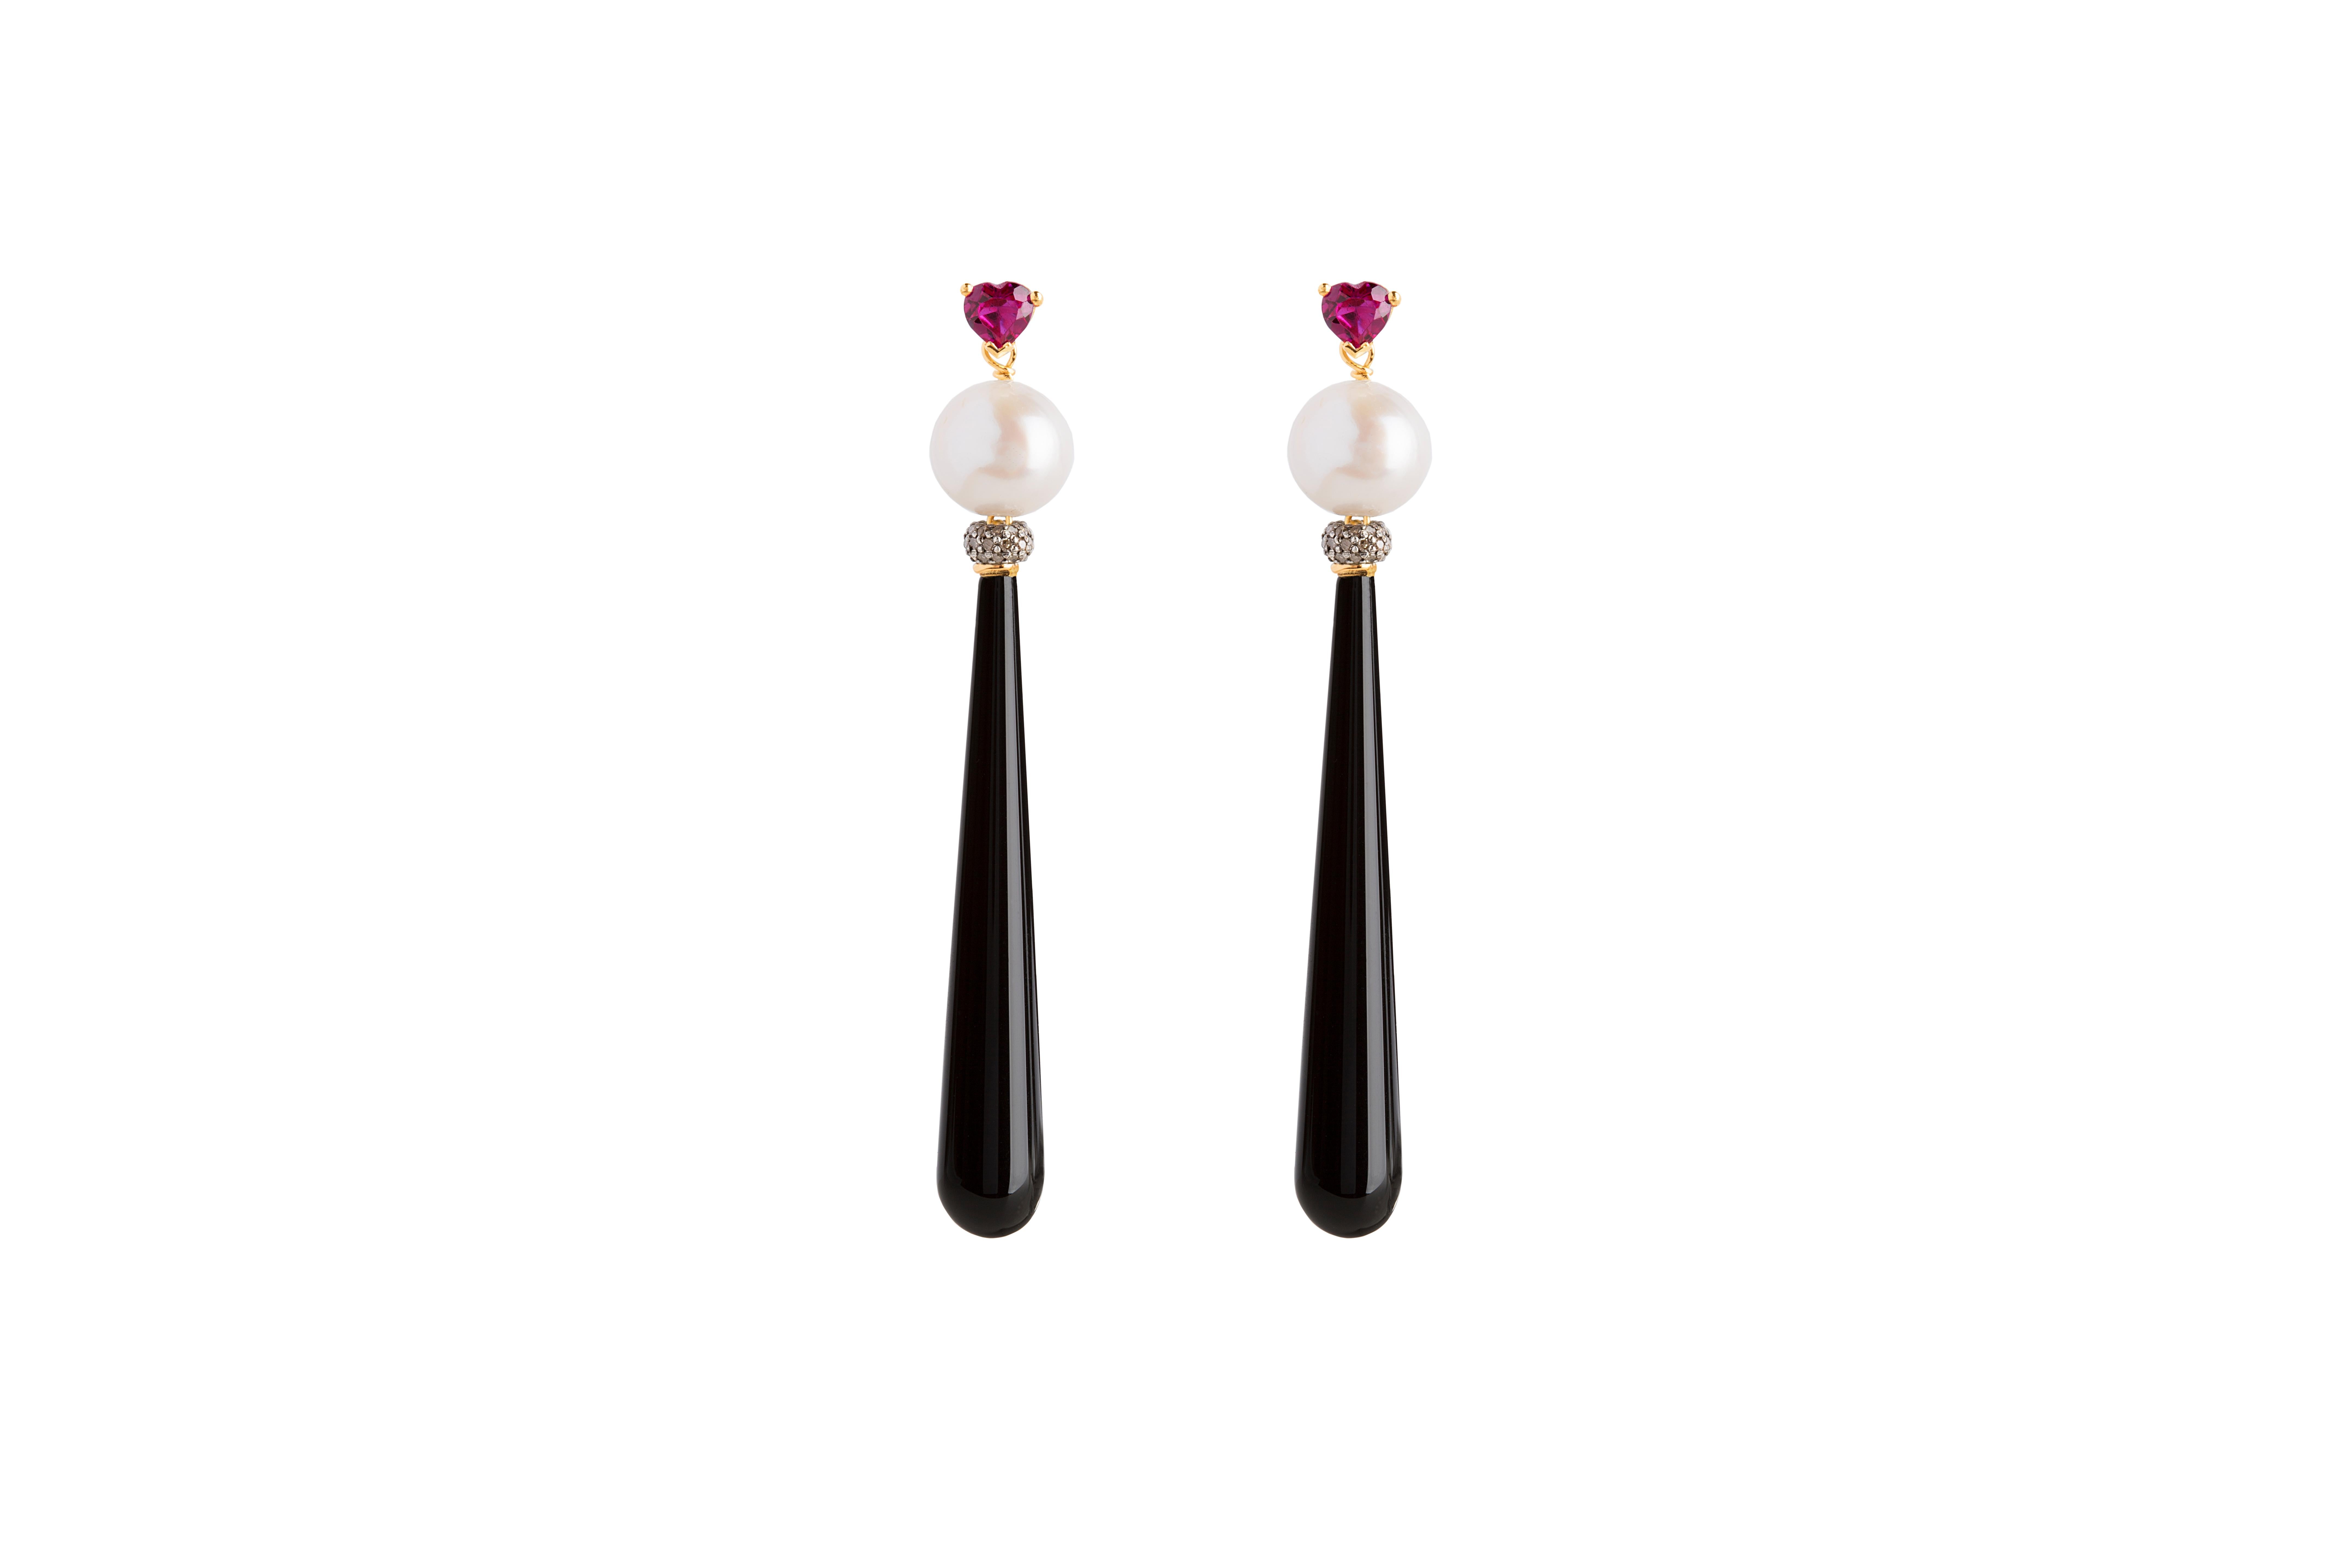 Rossella Ugolini 18K Gold Deco Style Earrings Heart-Shaped Ruby Diamonds Onyx  For Sale 4